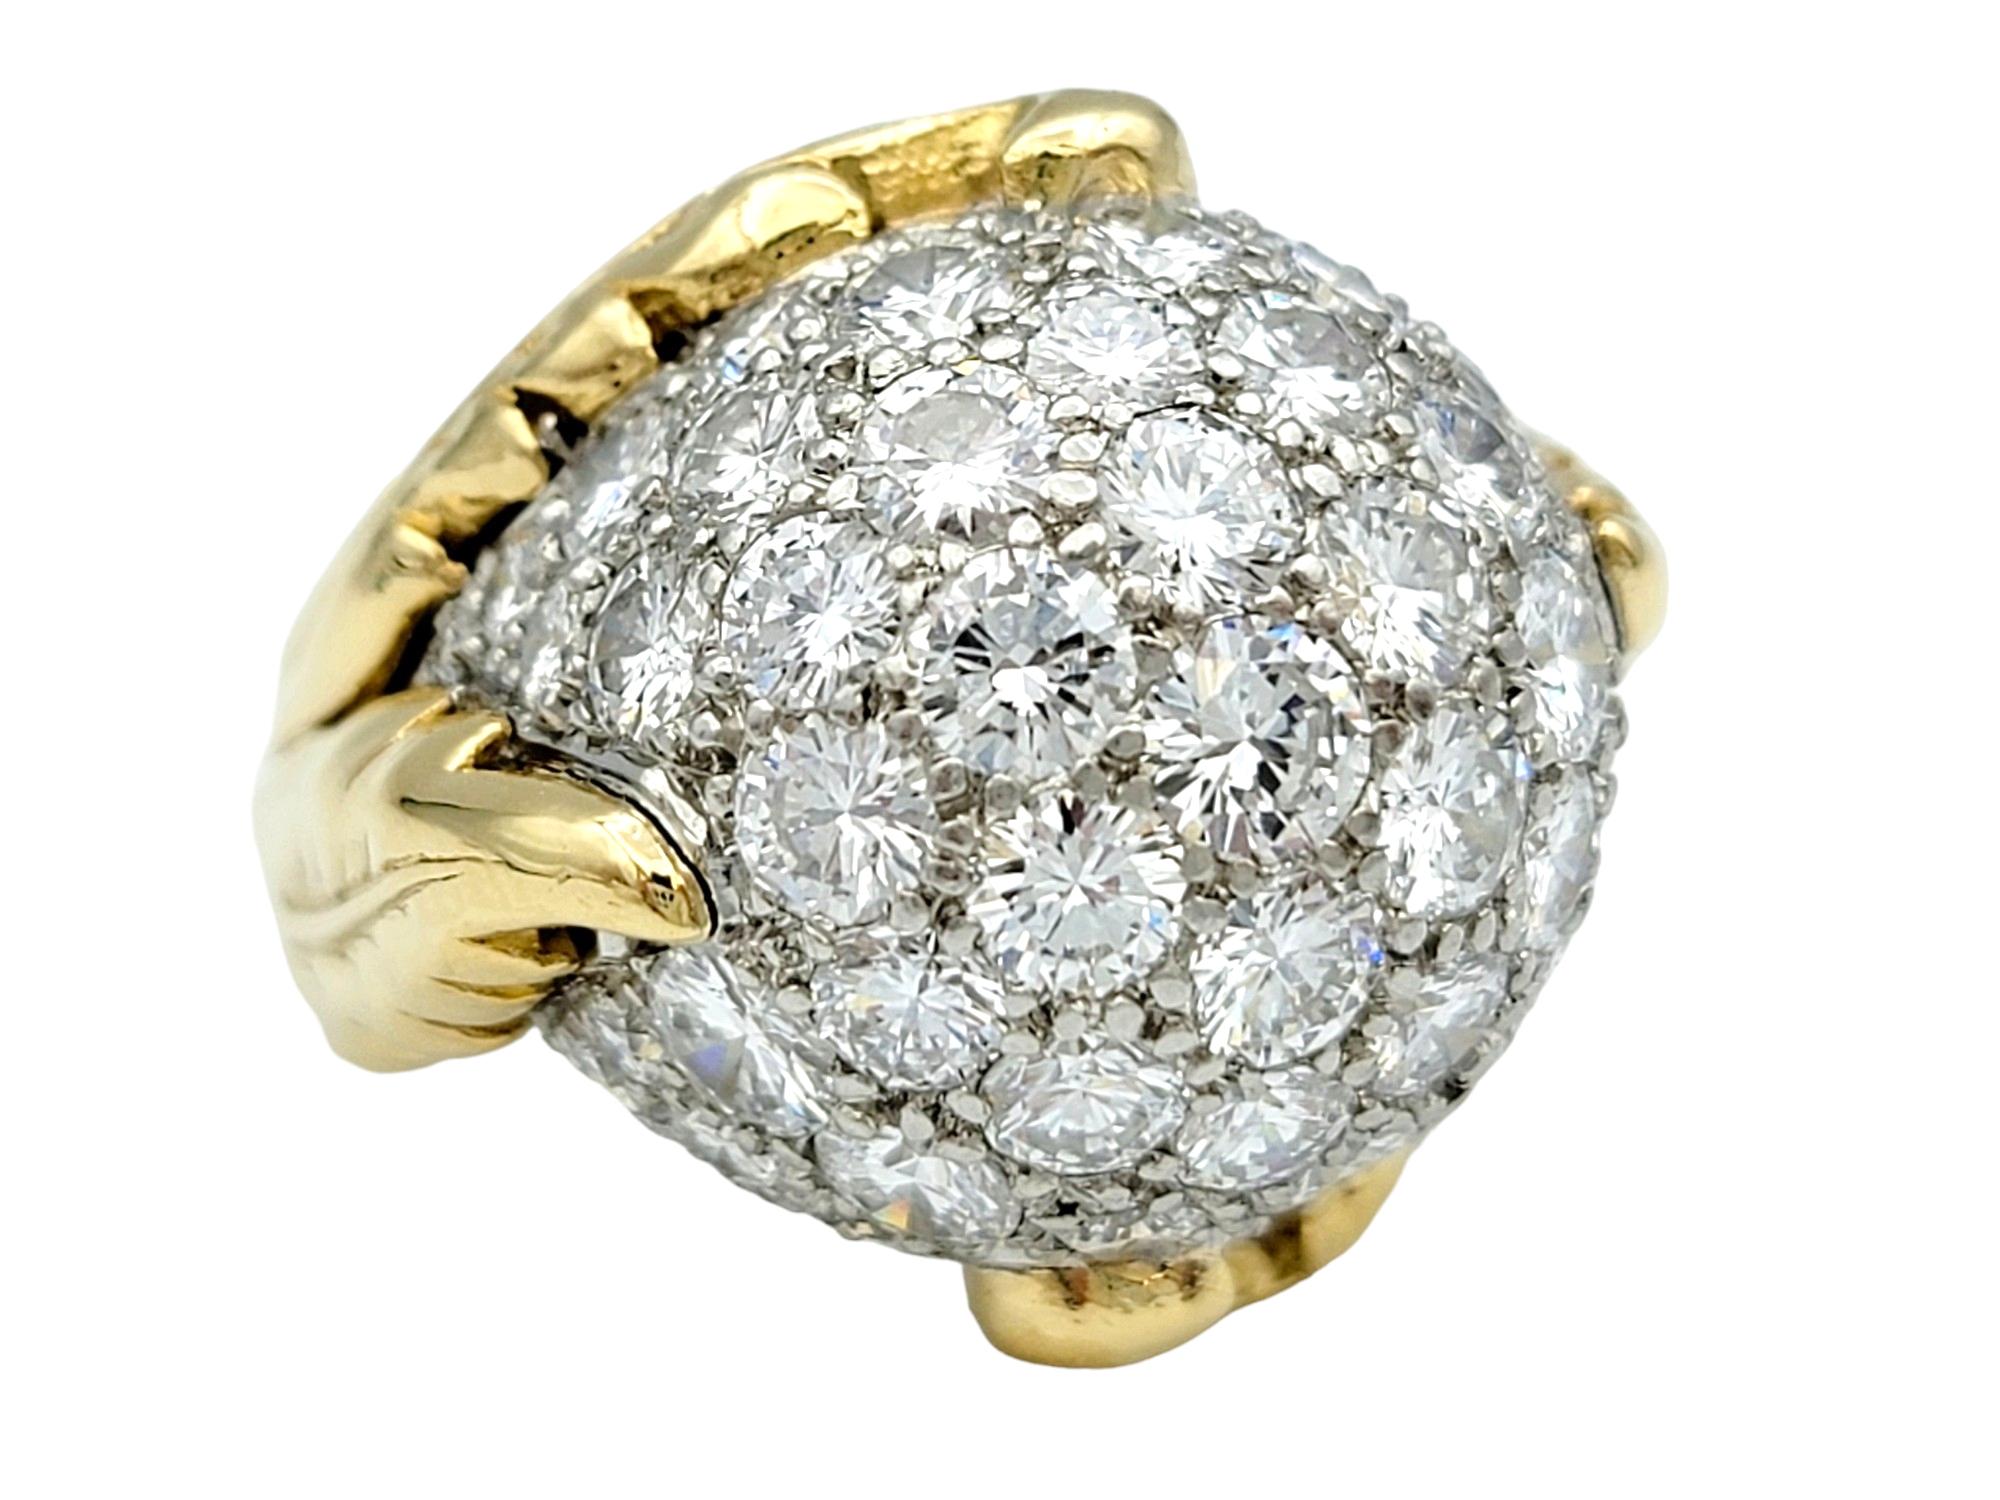 Taille de l'anneau : 6.5

Cette magnifique bague dôme incrustée de diamants, sertie dans de l'or jaune 18 carats lustré, est un magnifique témoignage de luxe et d'opulence. En son centre se trouve une sphère resplendissante, ornée d'un ensemble